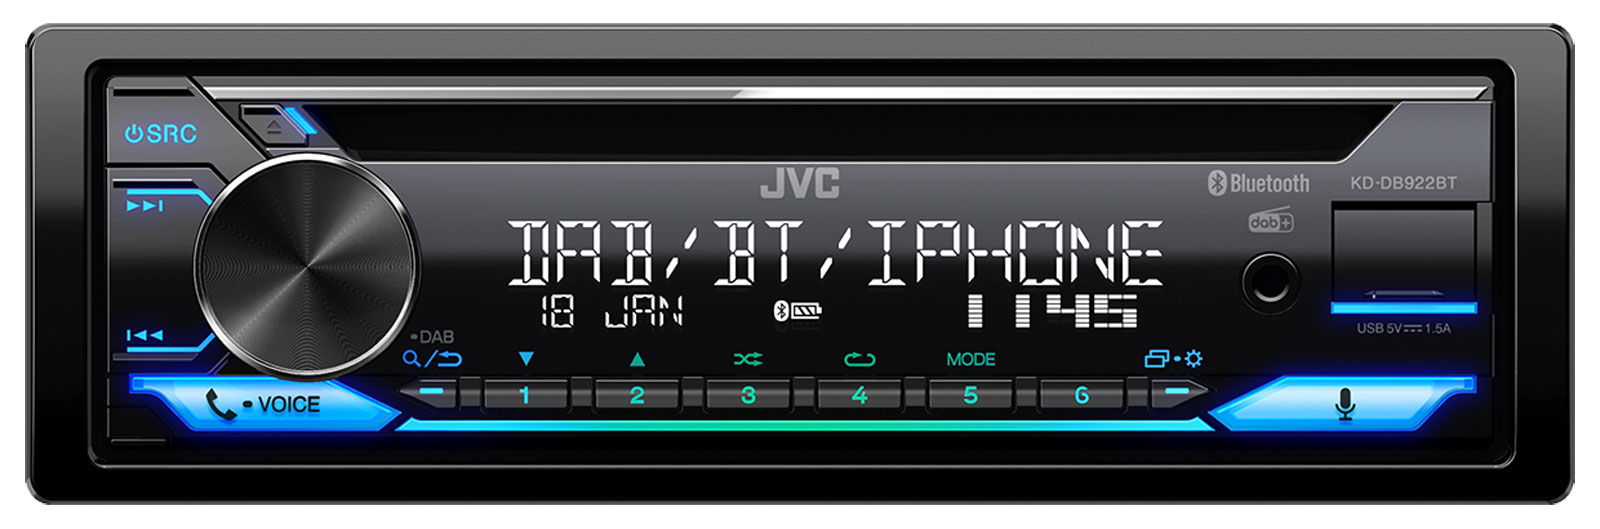 JVC KD-DB922BT - Autoradios 